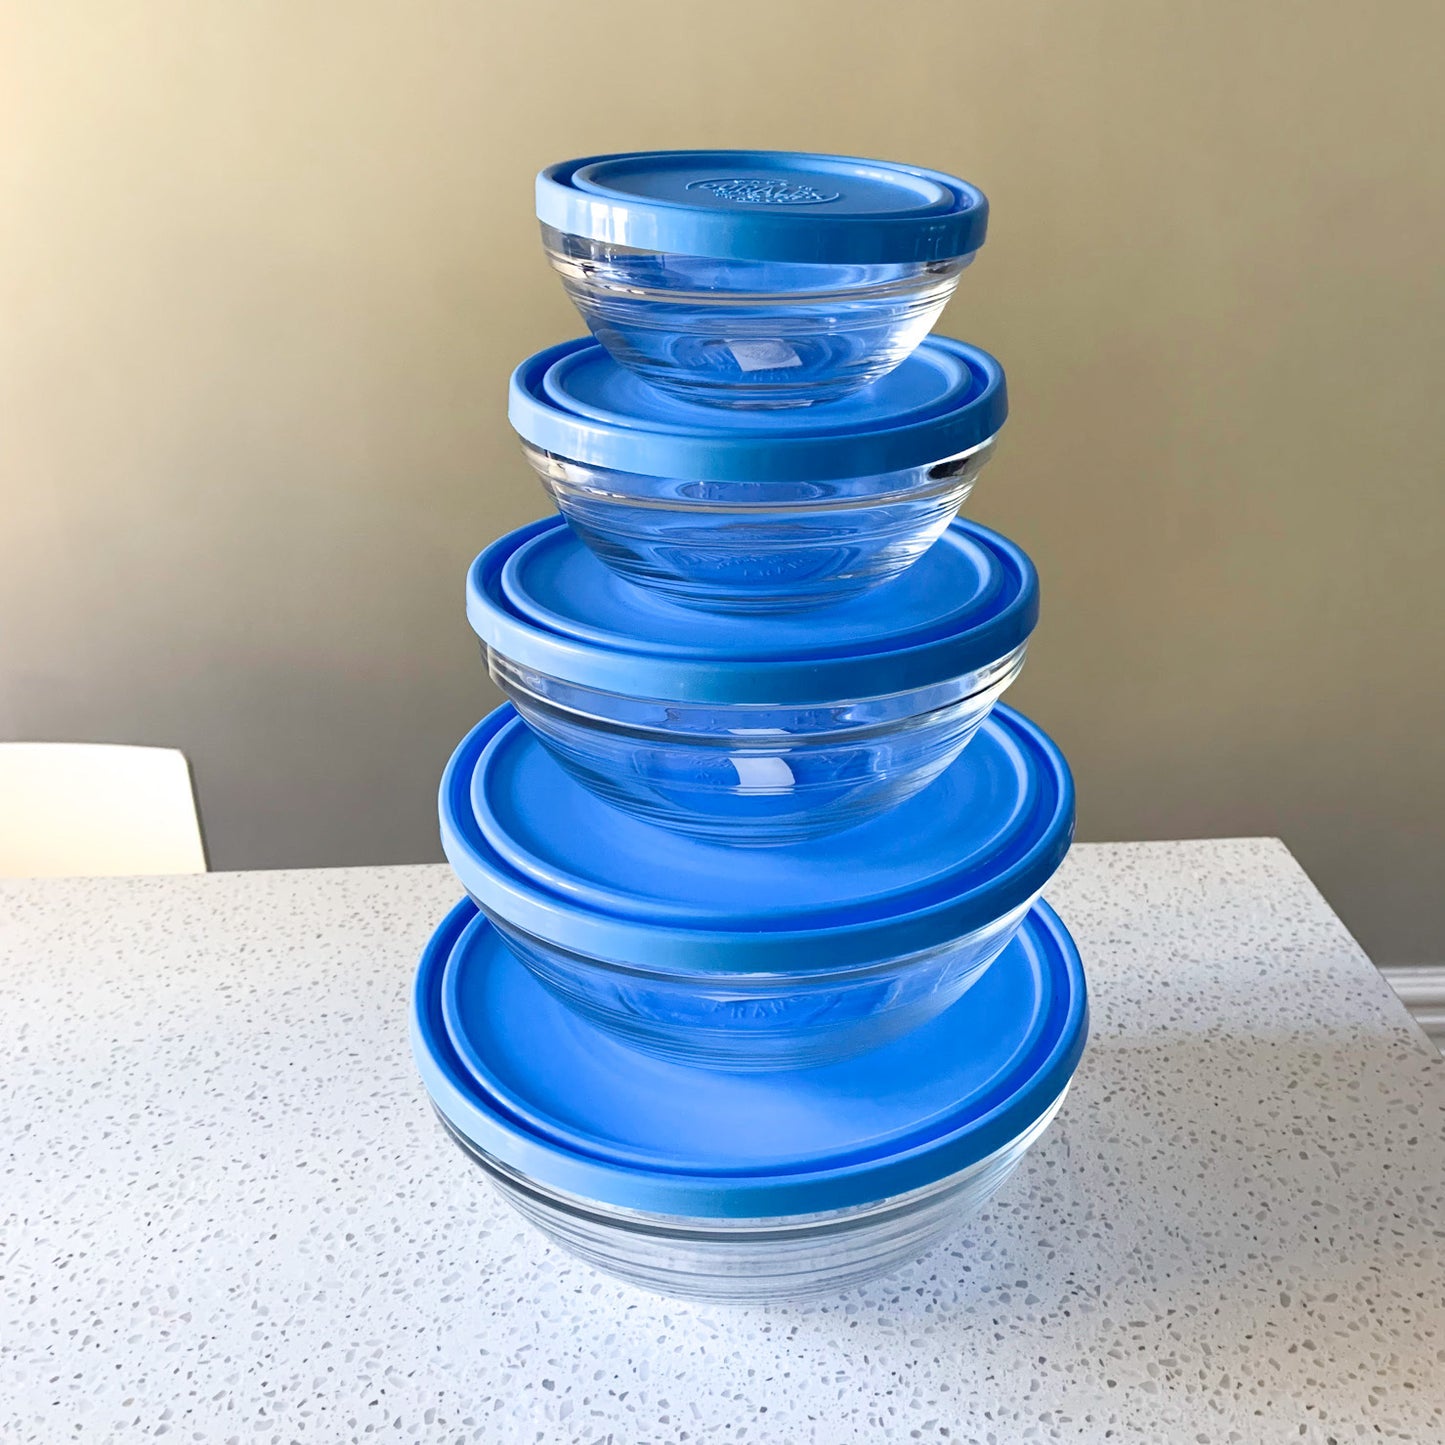 Duralex Canada Lys Bowl Set x5 with blue lids Clementine Boutique